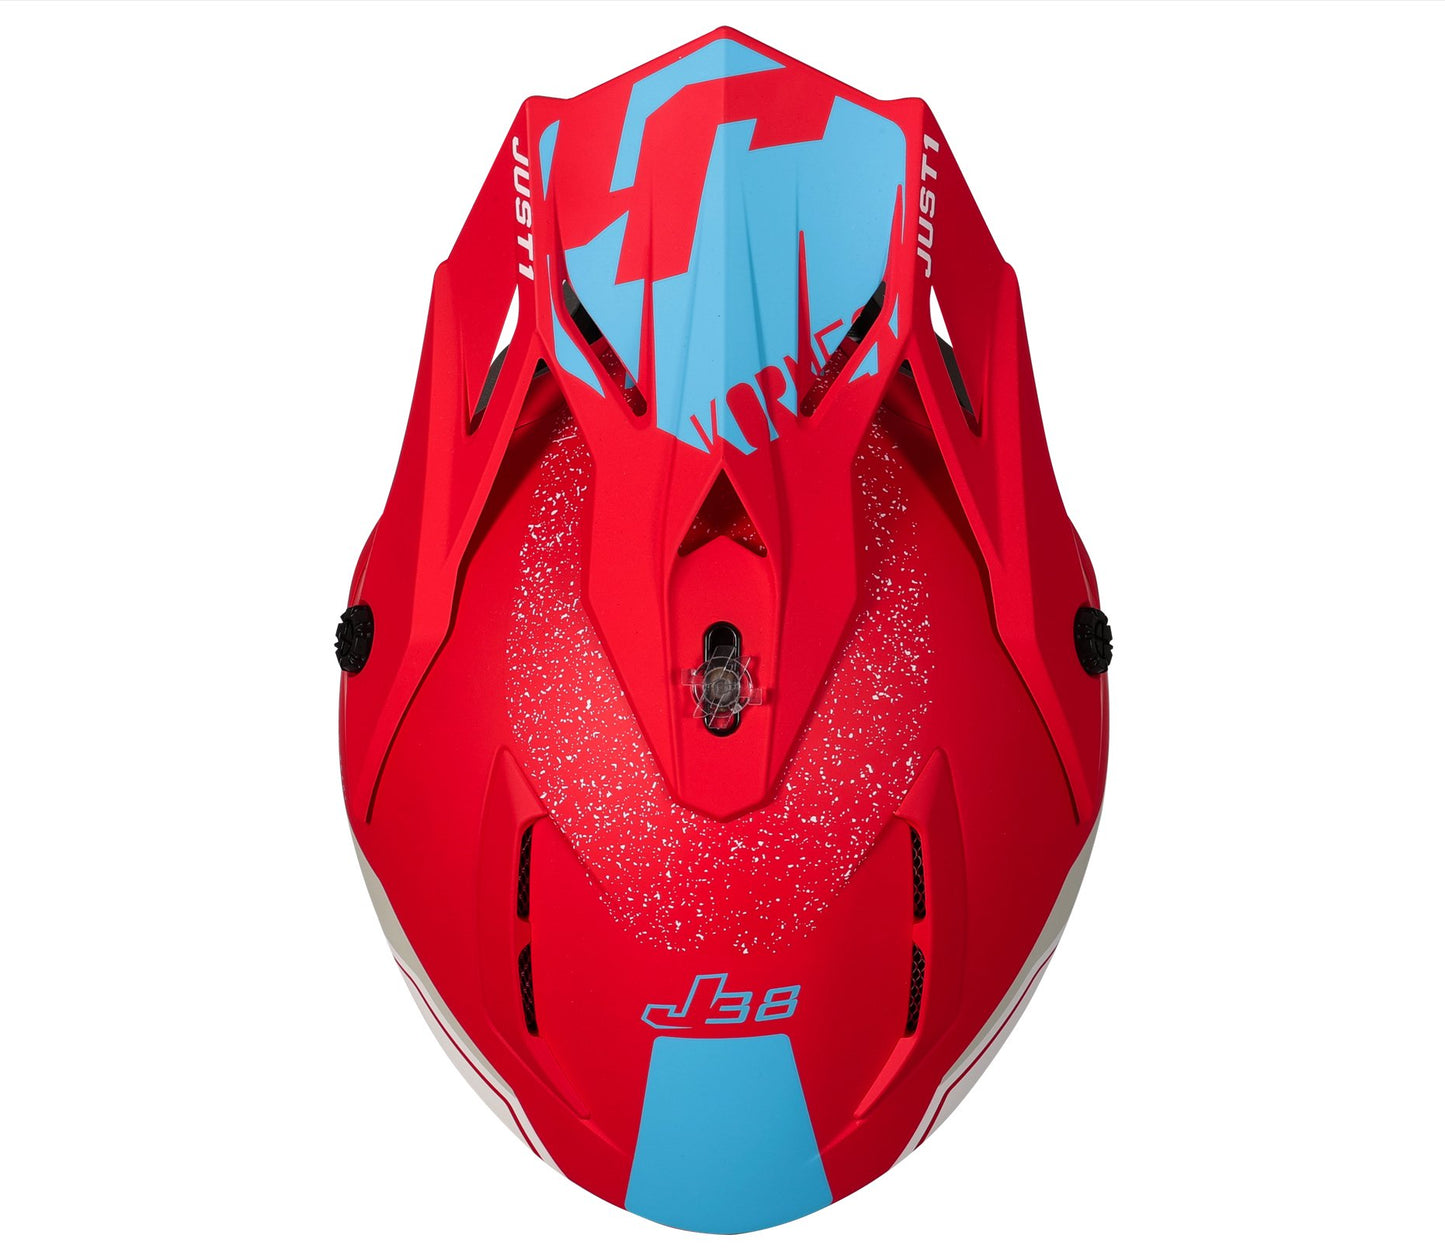 Just1 Motocross Helmet | J38 Korner Red Light Blue White - Just1